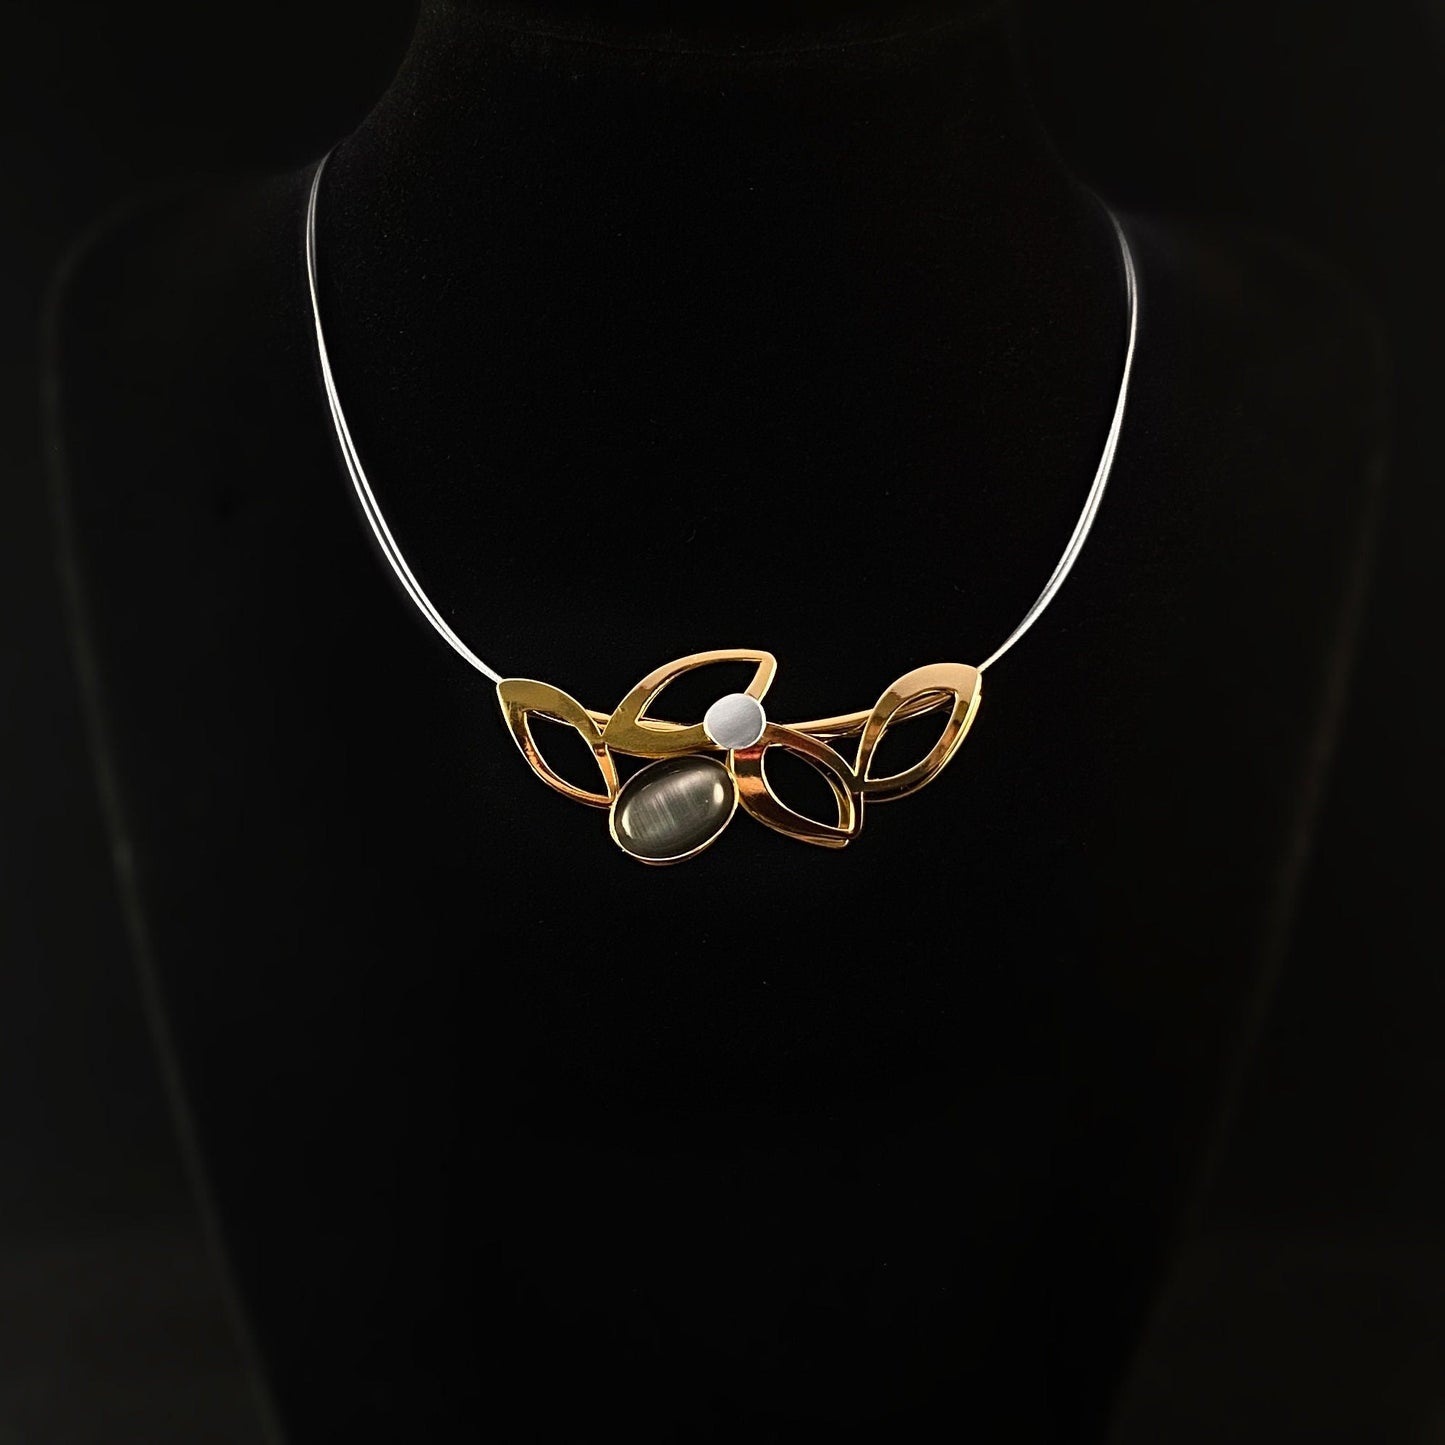 Lightweight Handmade Geometric Aluminum Necklace, Gold Petals